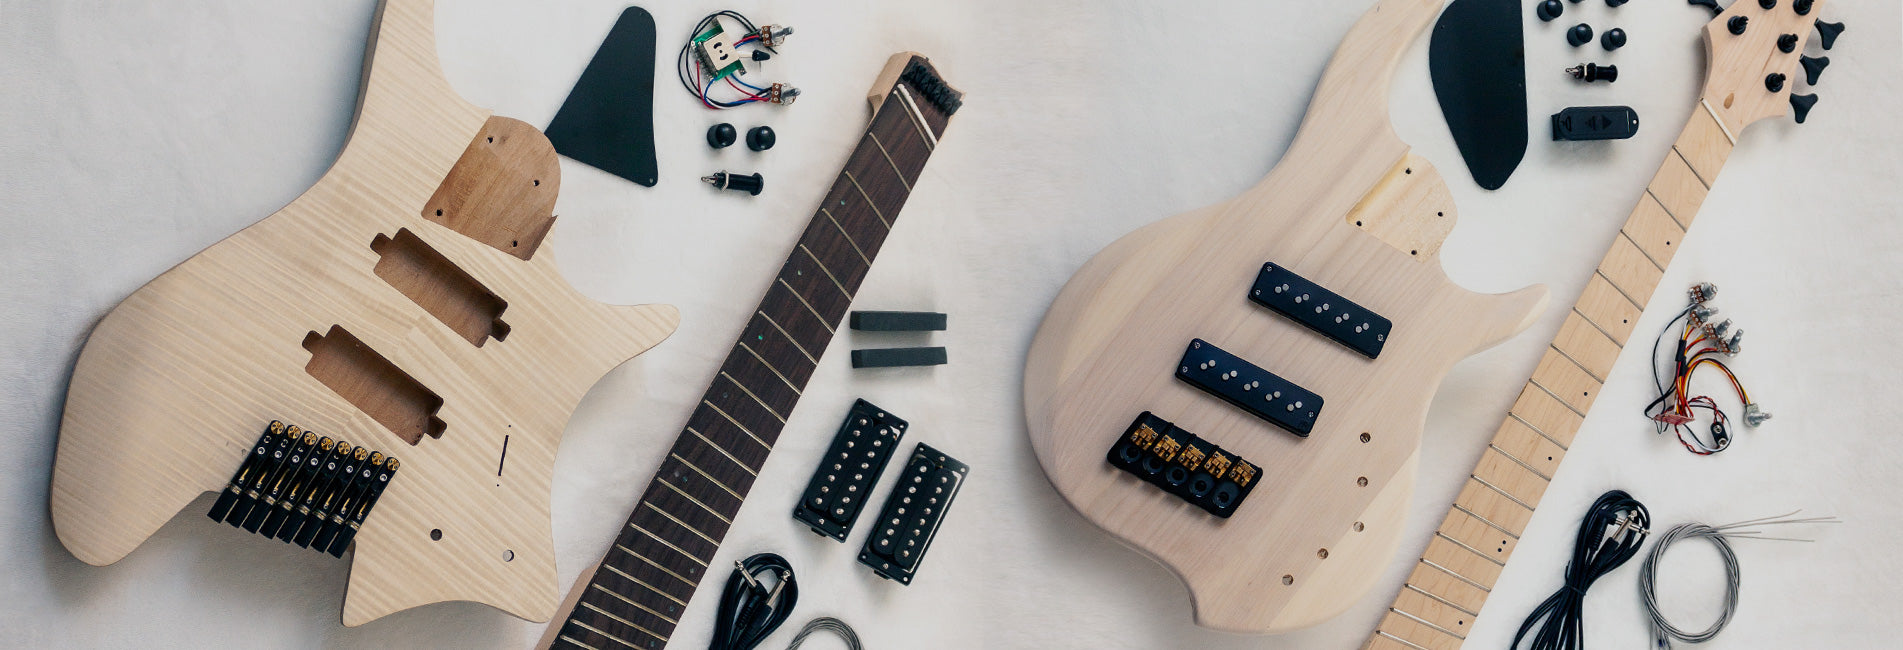 DIY Guitar Kits – Combine Guitars